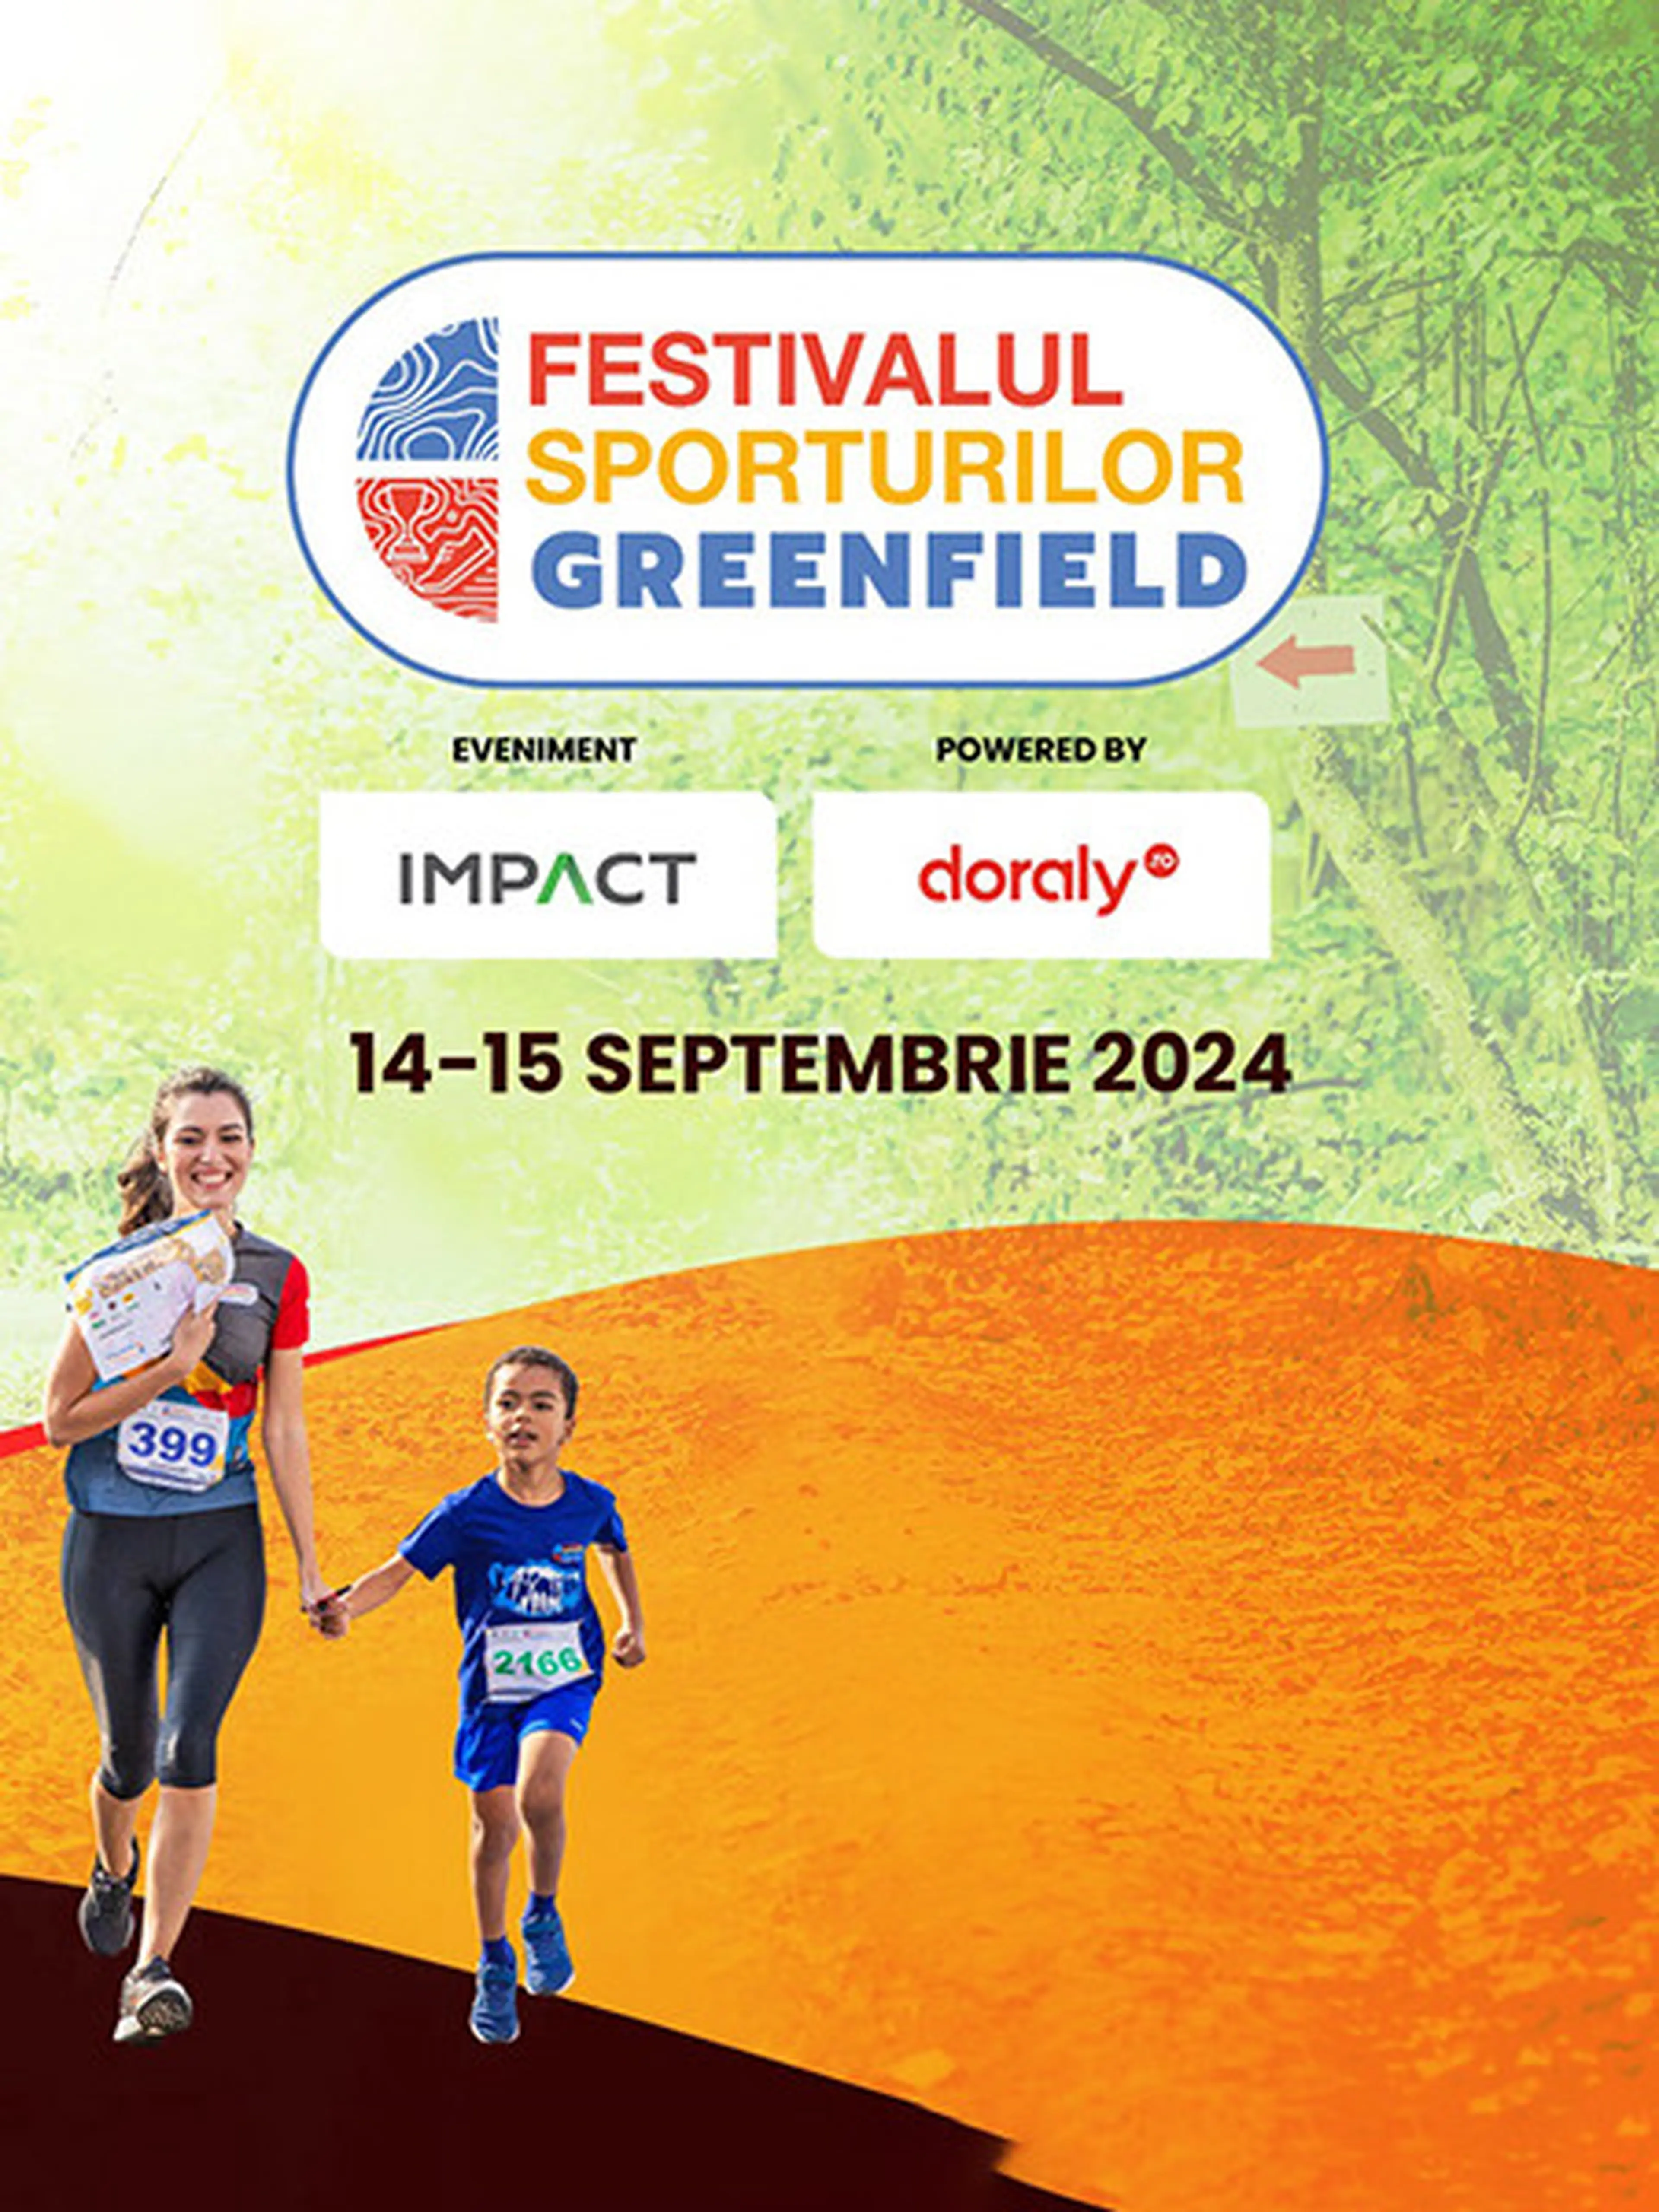 Festivalul Sporturilor Greenfield 2024